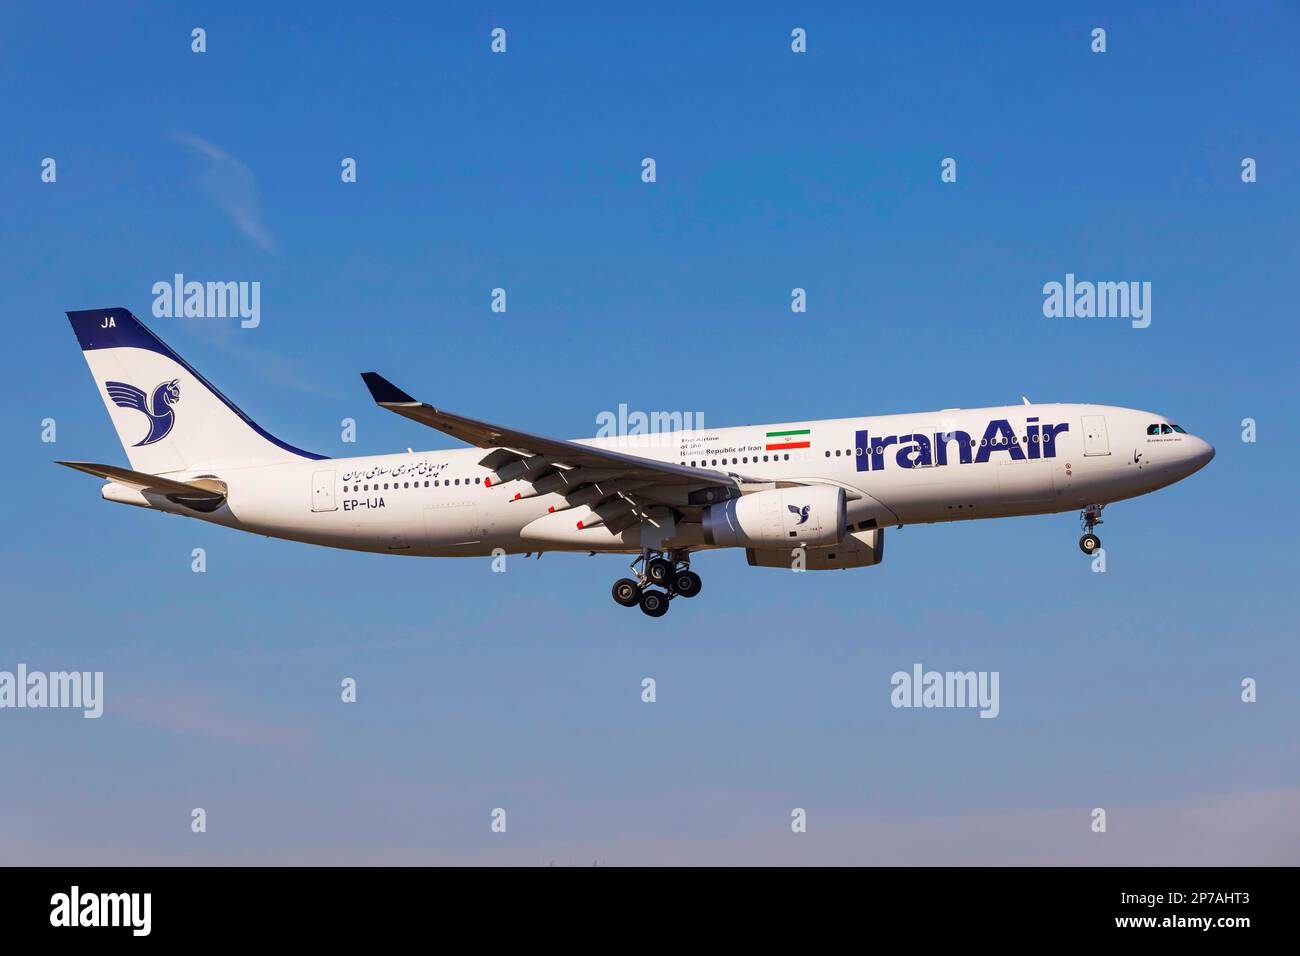 Iran air -Fotos und -Bildmaterial in hoher Auflösung – Alamy